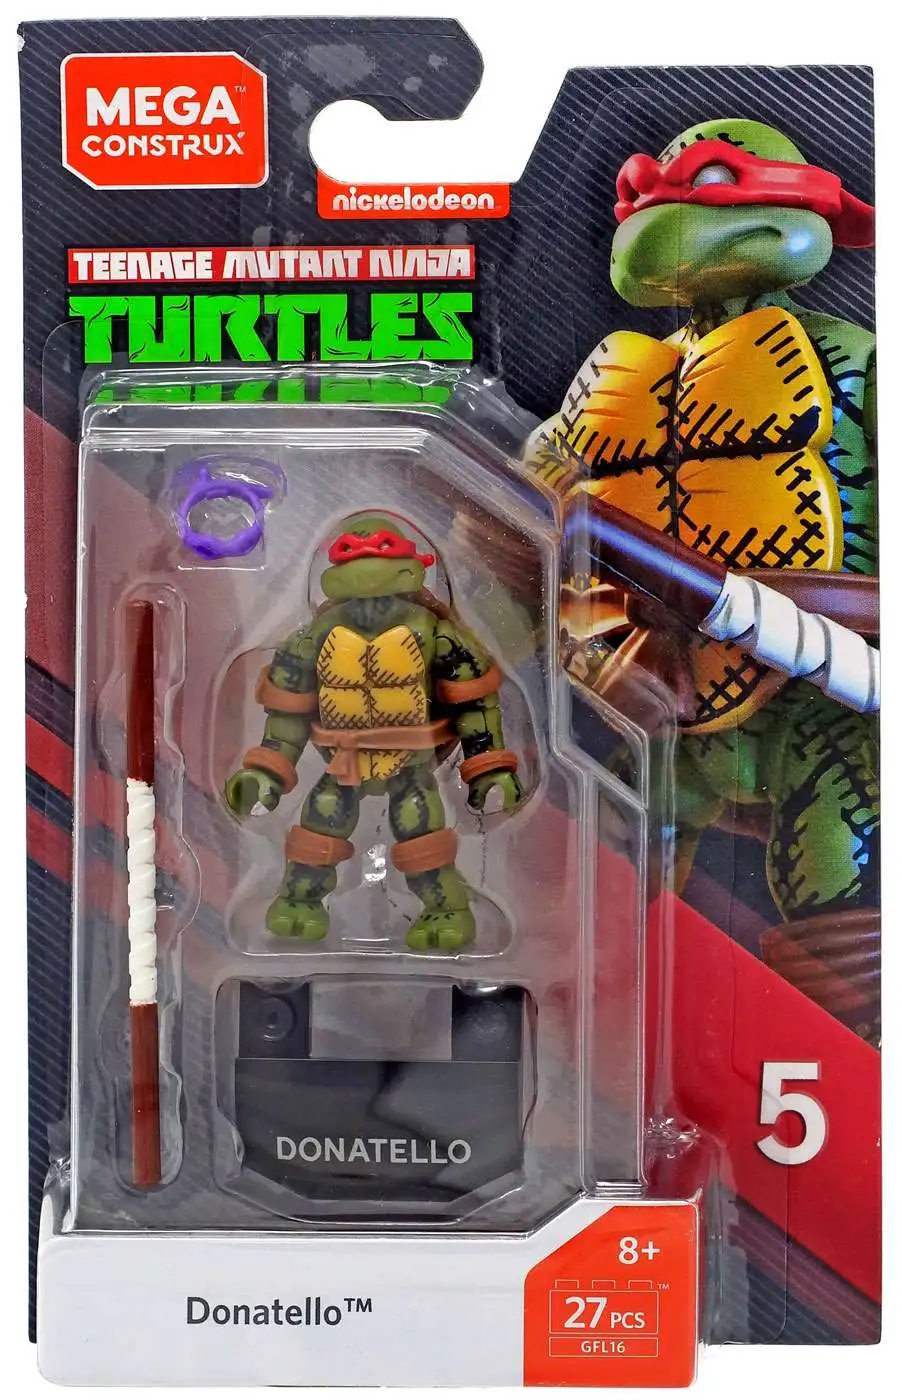 Mega Construx Teenage Mutant Ninja Turtles Series 5 Lot of 2 